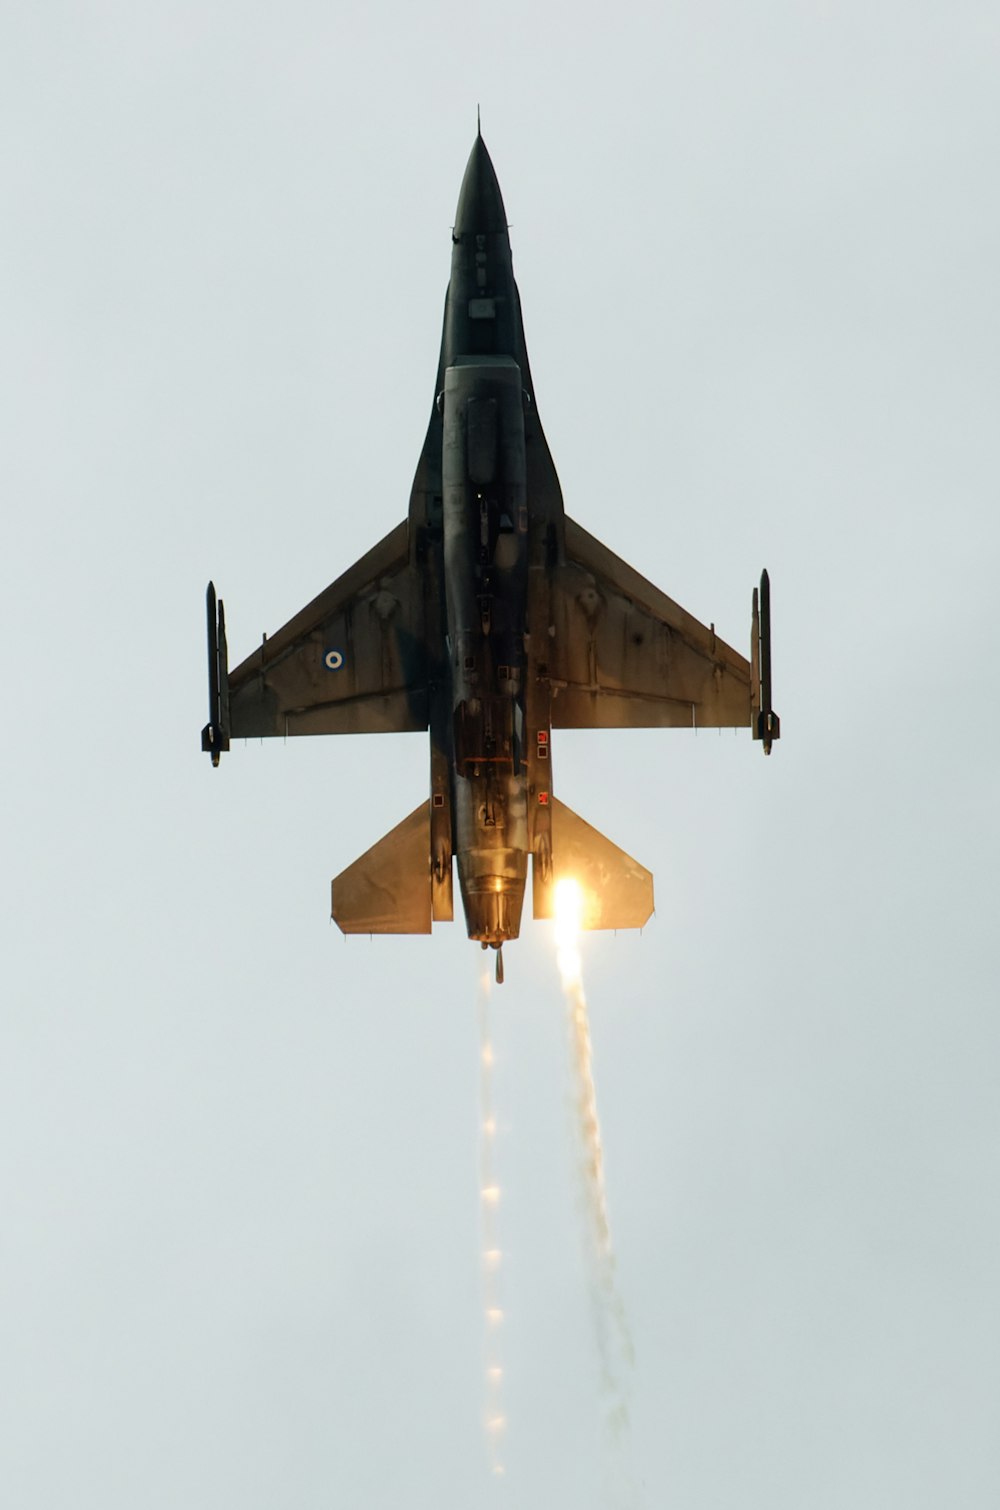 Un jet da combattimento che vola nell'aria con una scia di fumo che esce da esso